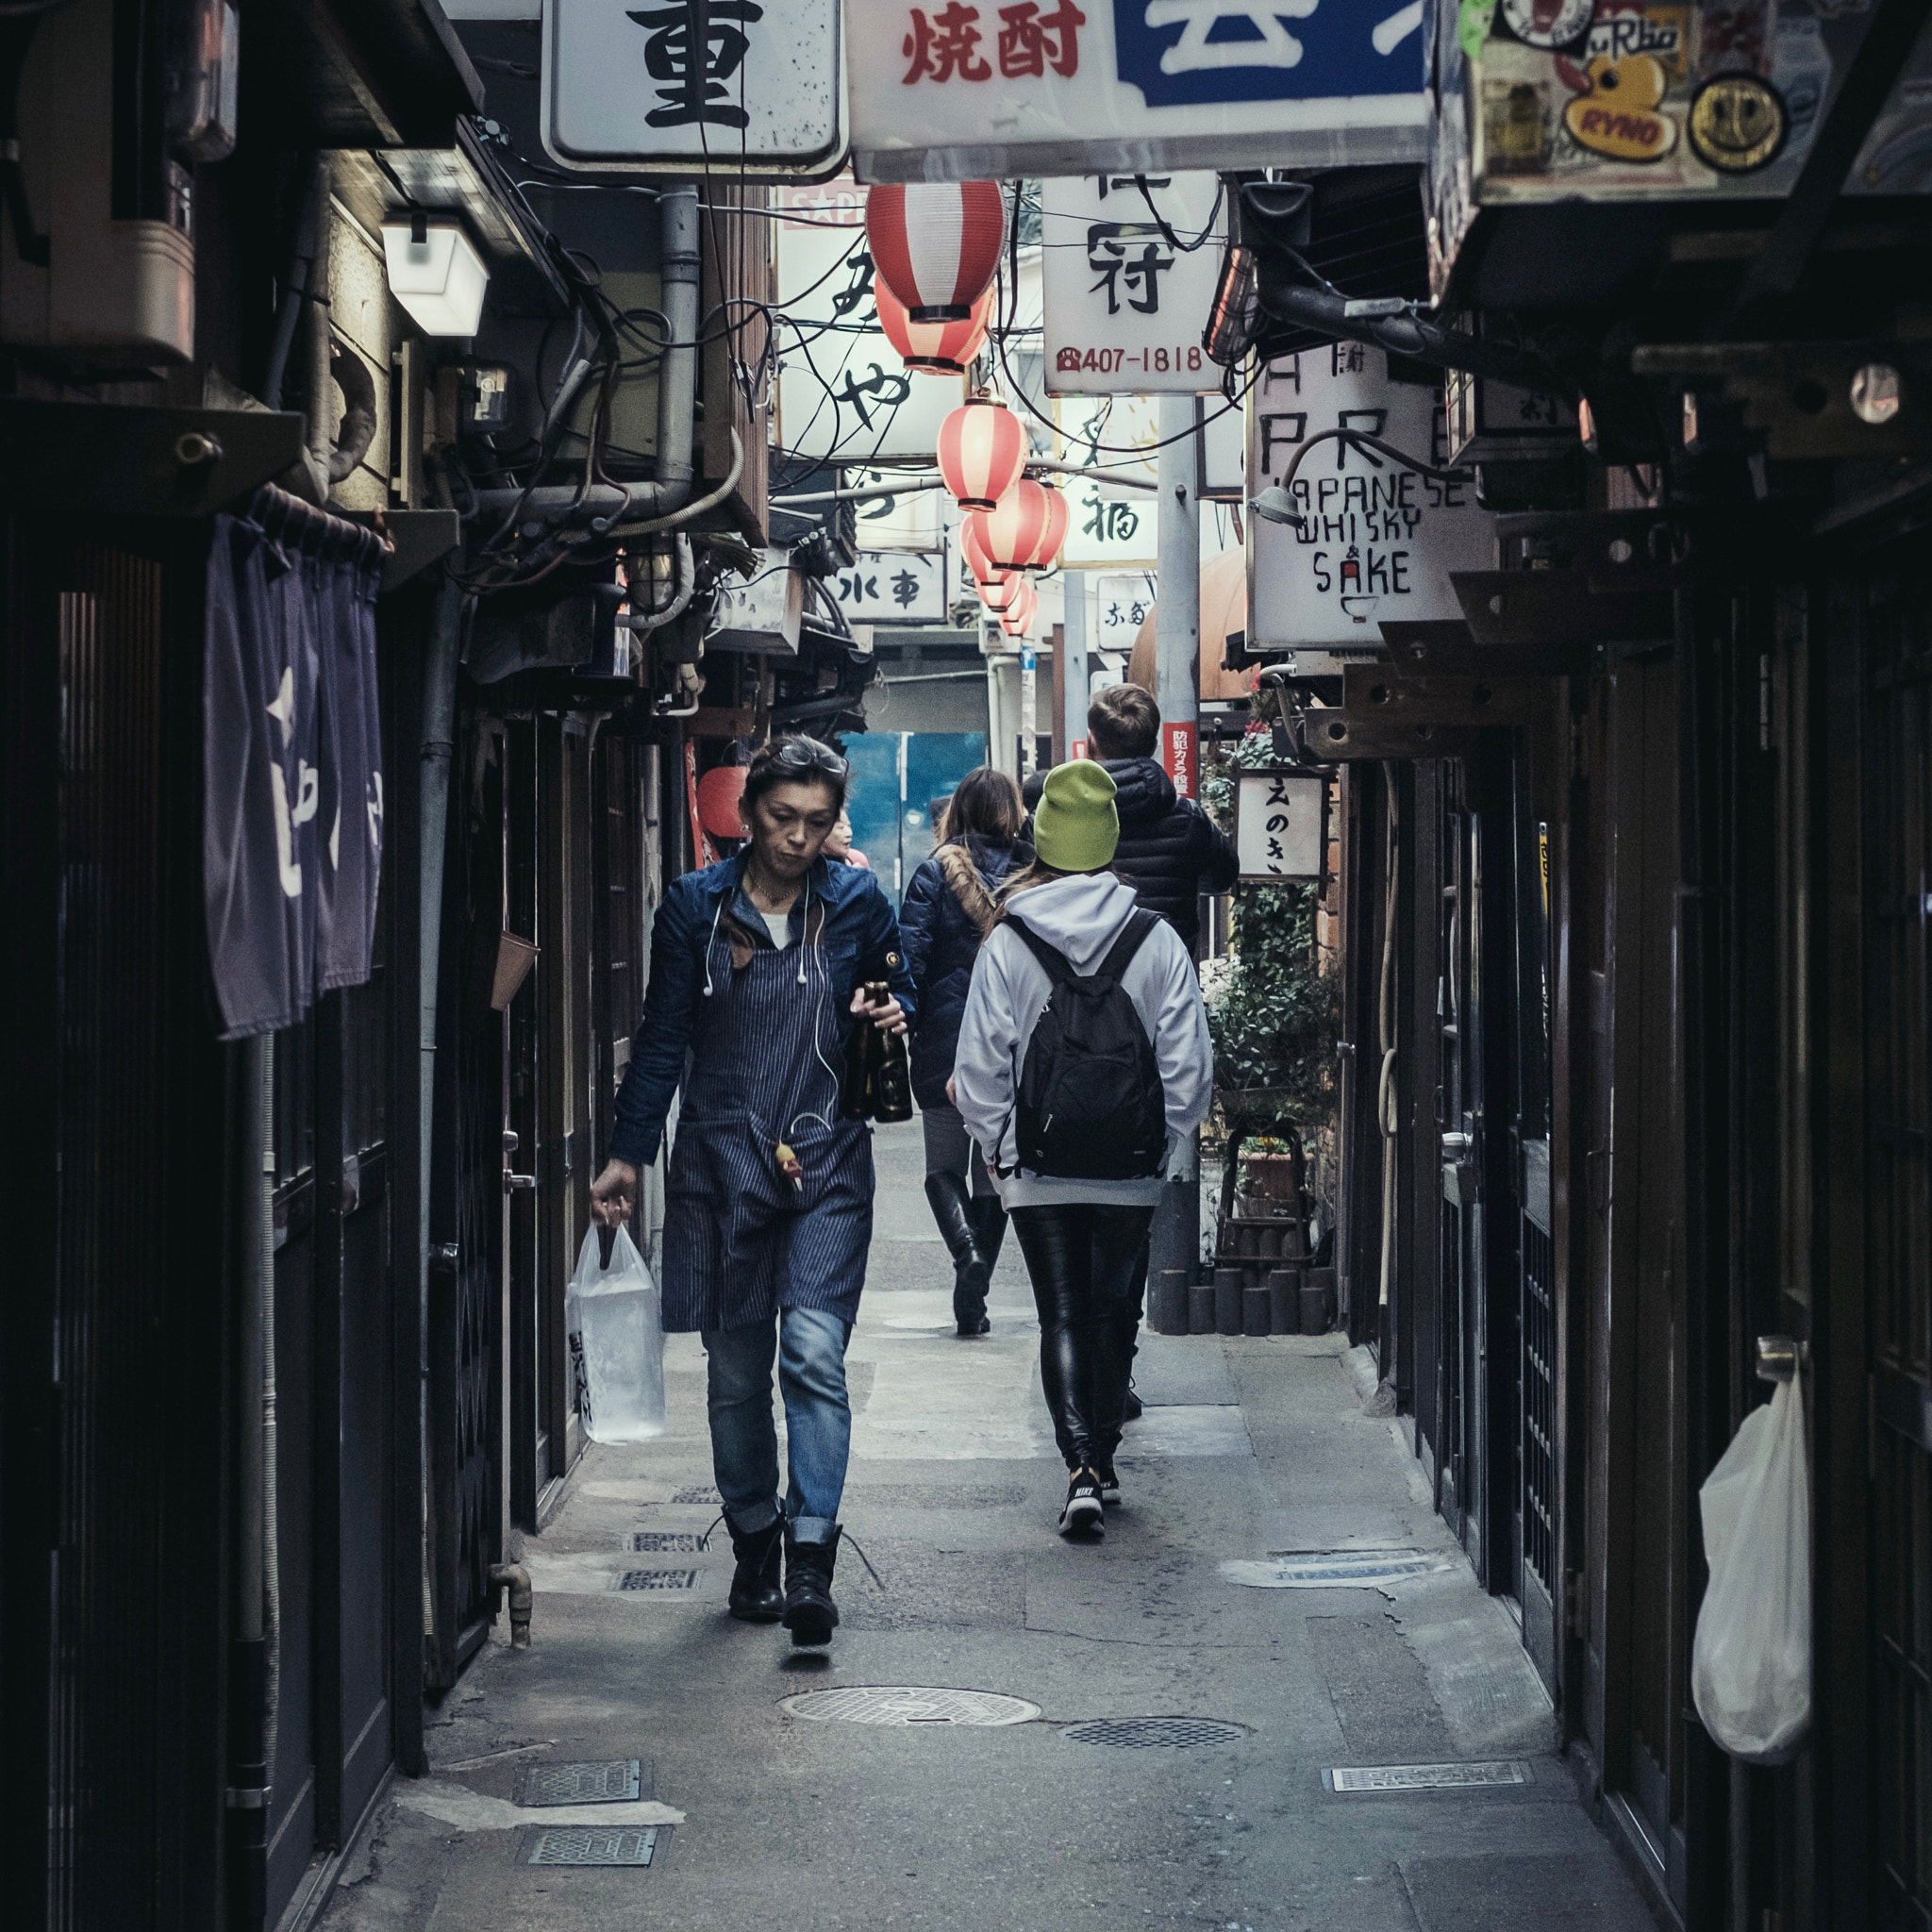 Fujifilm X-Pro2 sample photo. Shibuya back alley photography